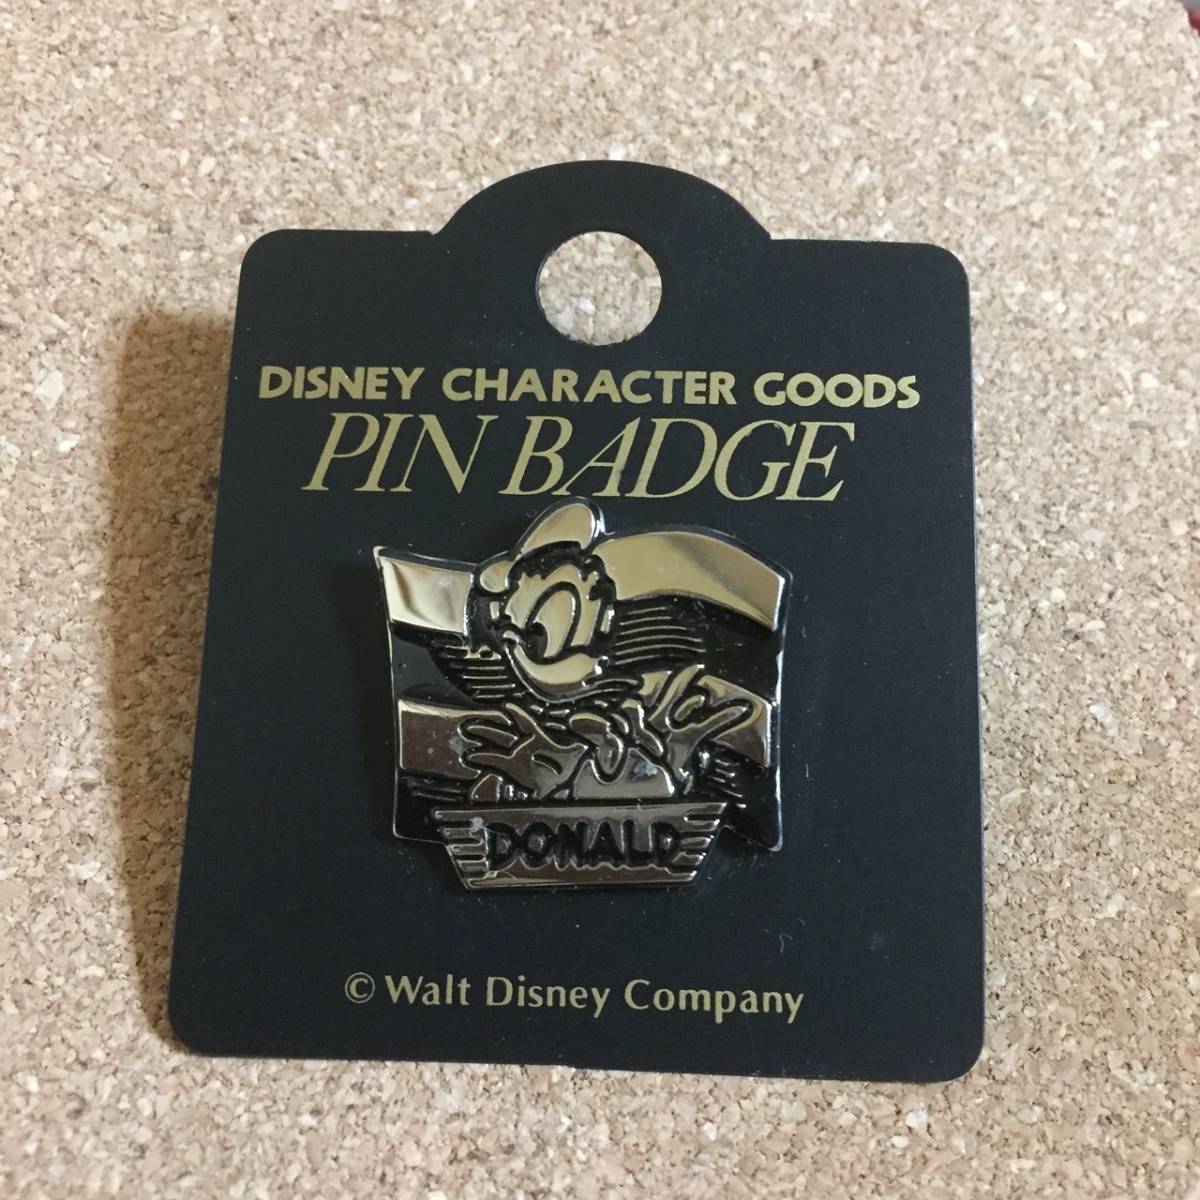  Disney Donald (DONALD) silver pin badge!